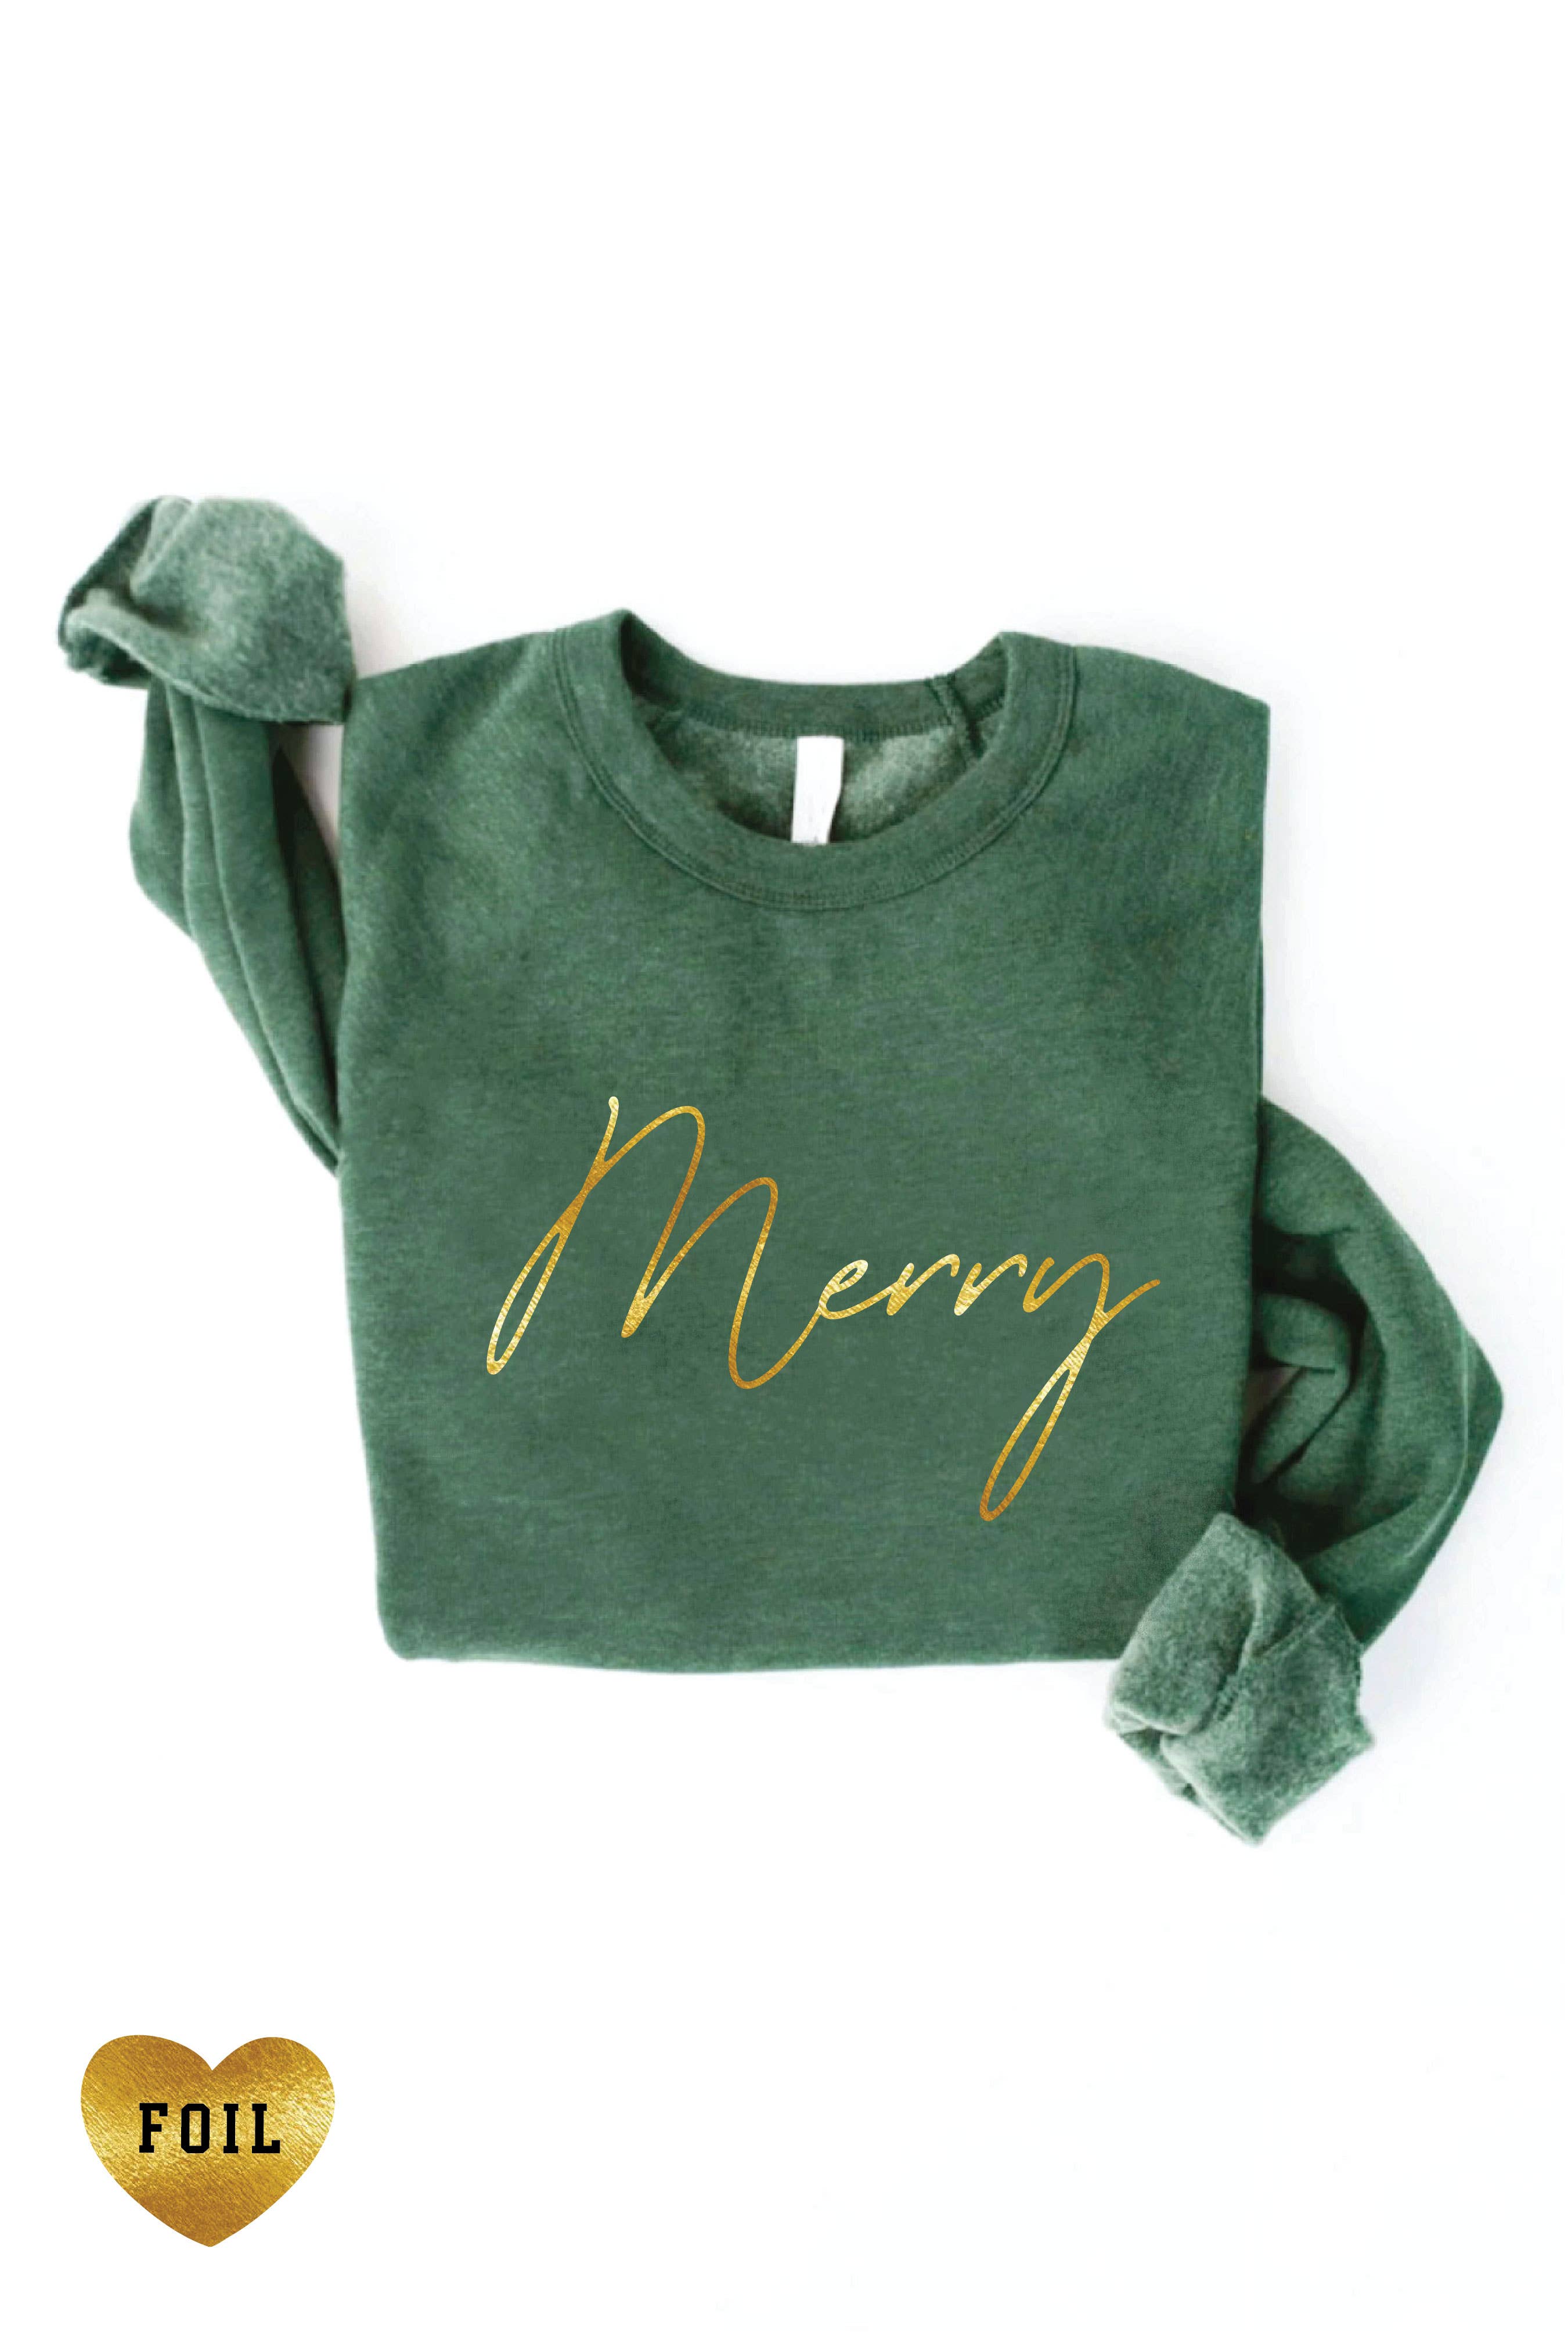 MERRY FOIL Graphic Sweatshirt: L / DARK H. SAGE